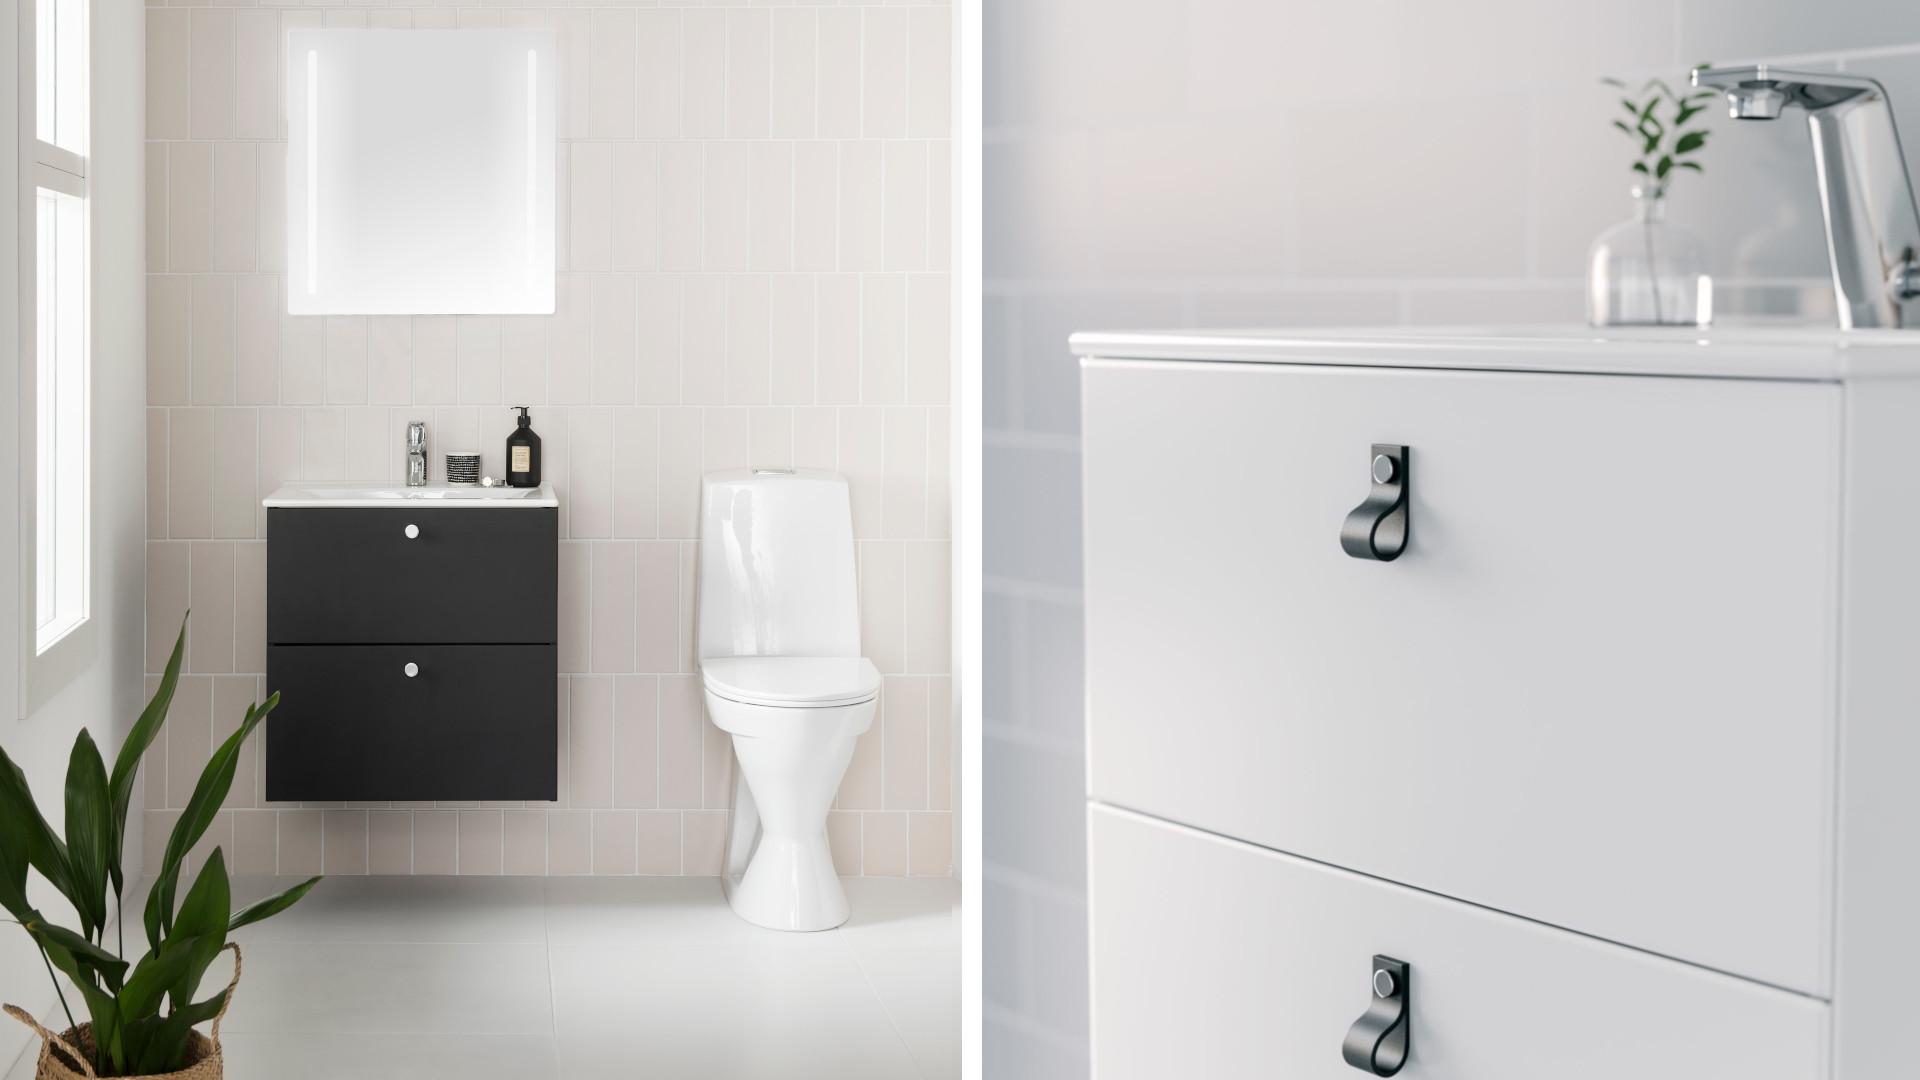 IDOn monipuoliset kalustesarjat sopivat monen kokoiseen ja tyyliseen kylpyhuoneeseen. IDO Elegantin alakaappeja ja tasoaltaita on saatavilla kahdessa eri syvyydessä.